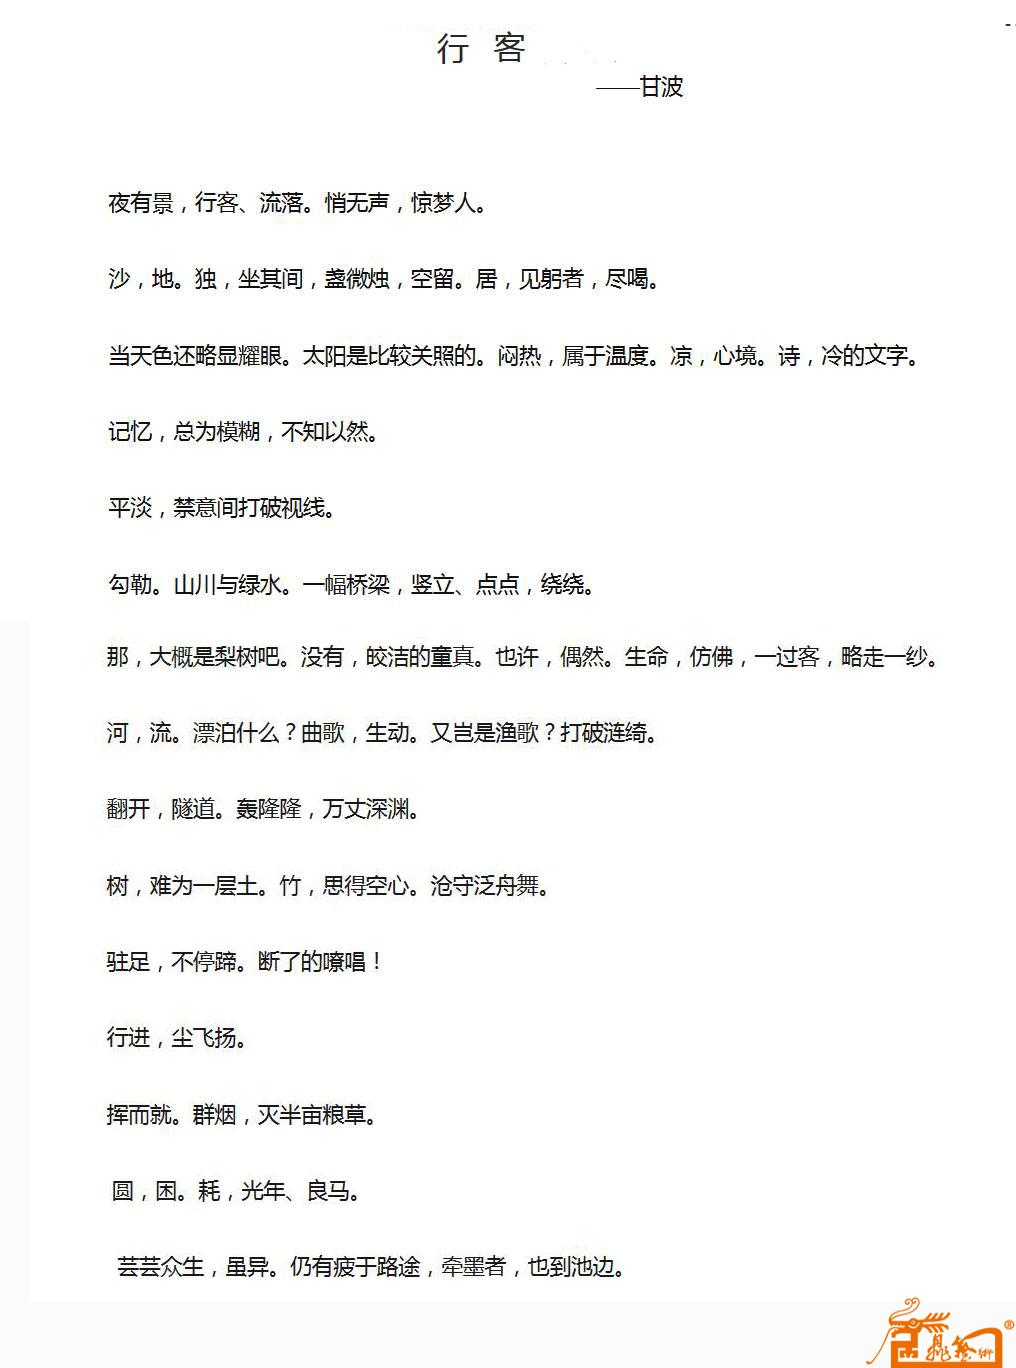 56、中国著名书法家甘波创作诗歌